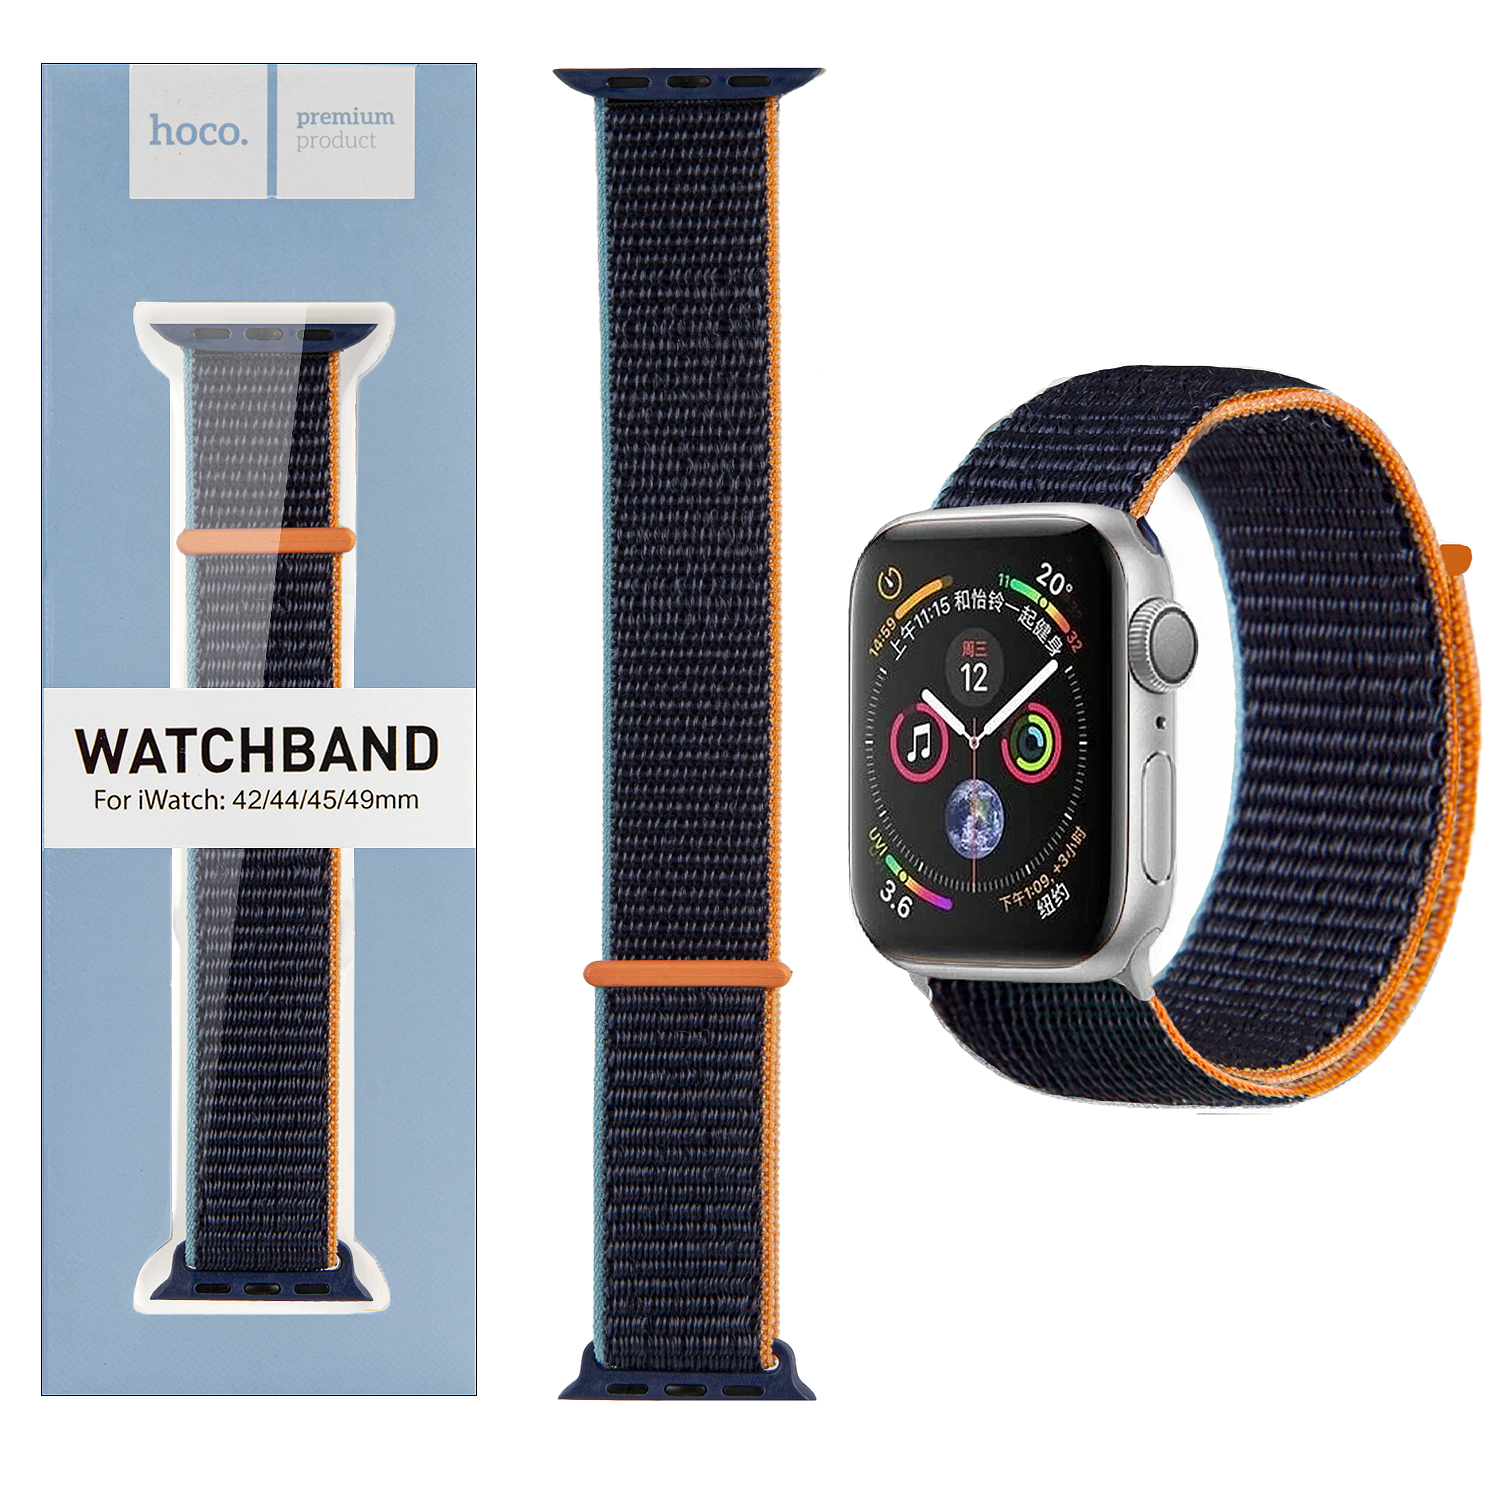 Ремешок для Apl watch 42/44/45mm Watchband WA02 nylon strap dark navy HOCO